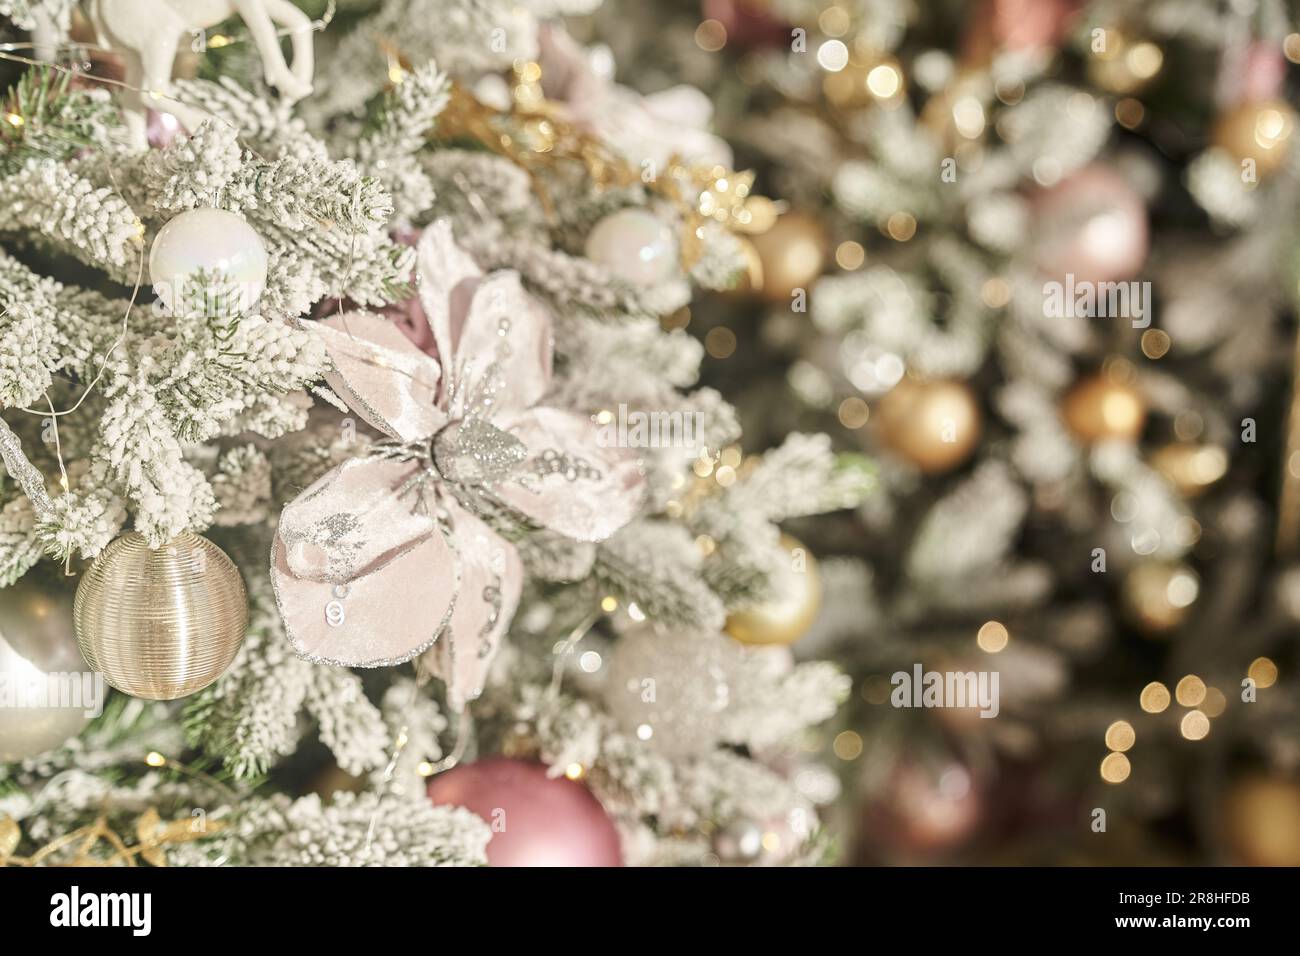 Hintergrund von Weihnachten und Neujahr. Ein prächtiger Weihnachtsbaum. Spielzeug, das an einem Band hängt. Eine helle, festliche Komposition im Winter. Grußkarte mit Kopierbereich. Hochwertiges Foto Stockfoto